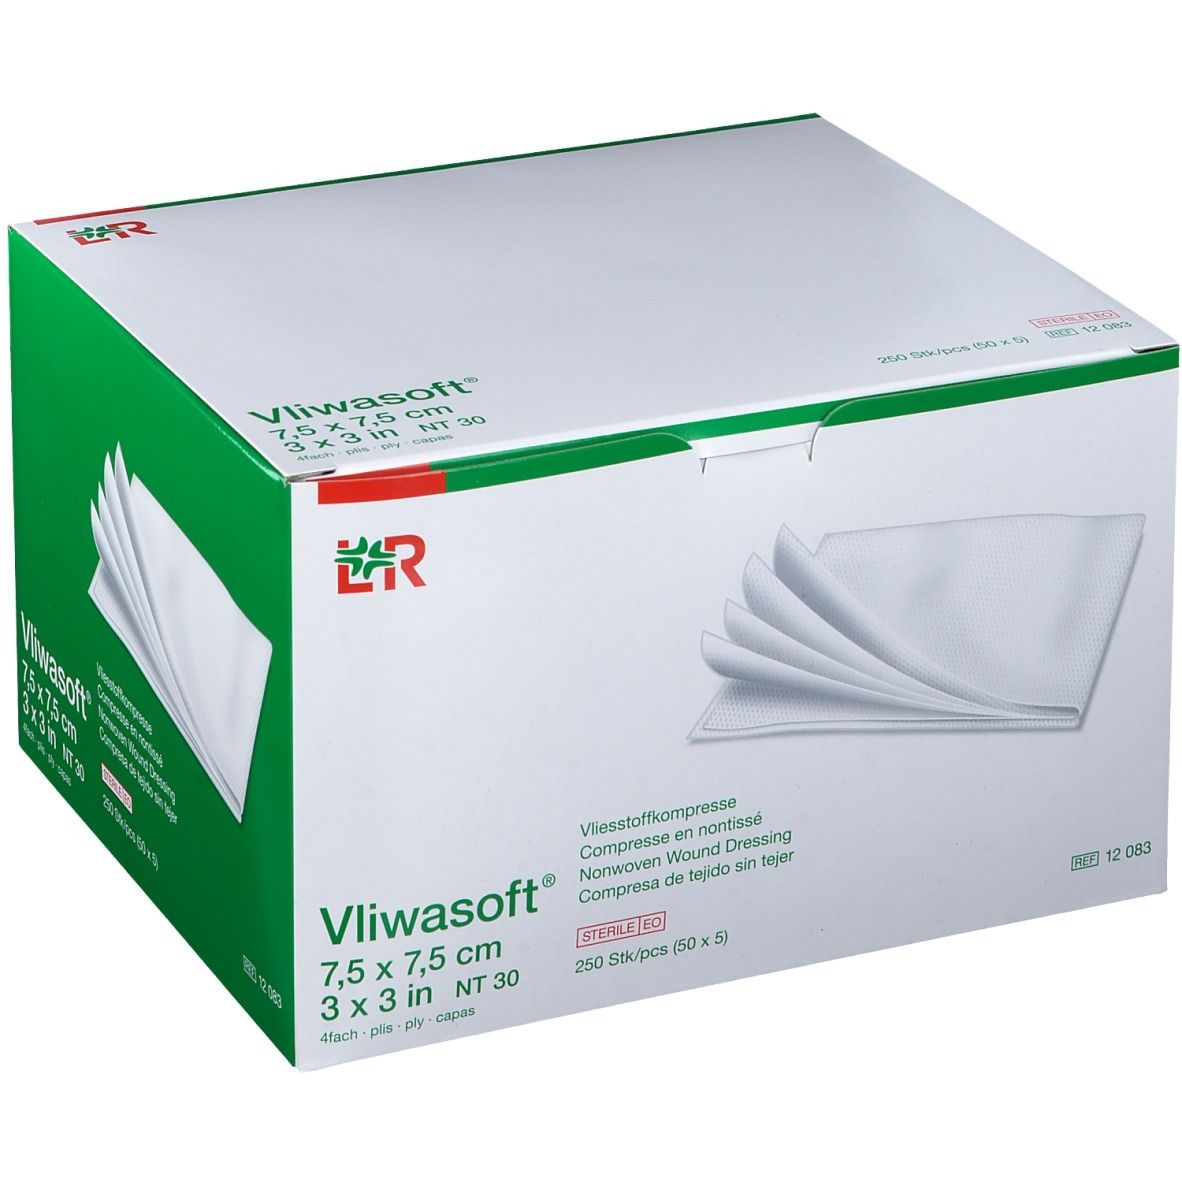 Vliwasoft® Compresse Stérile 7,5 cm x 7,5 cm